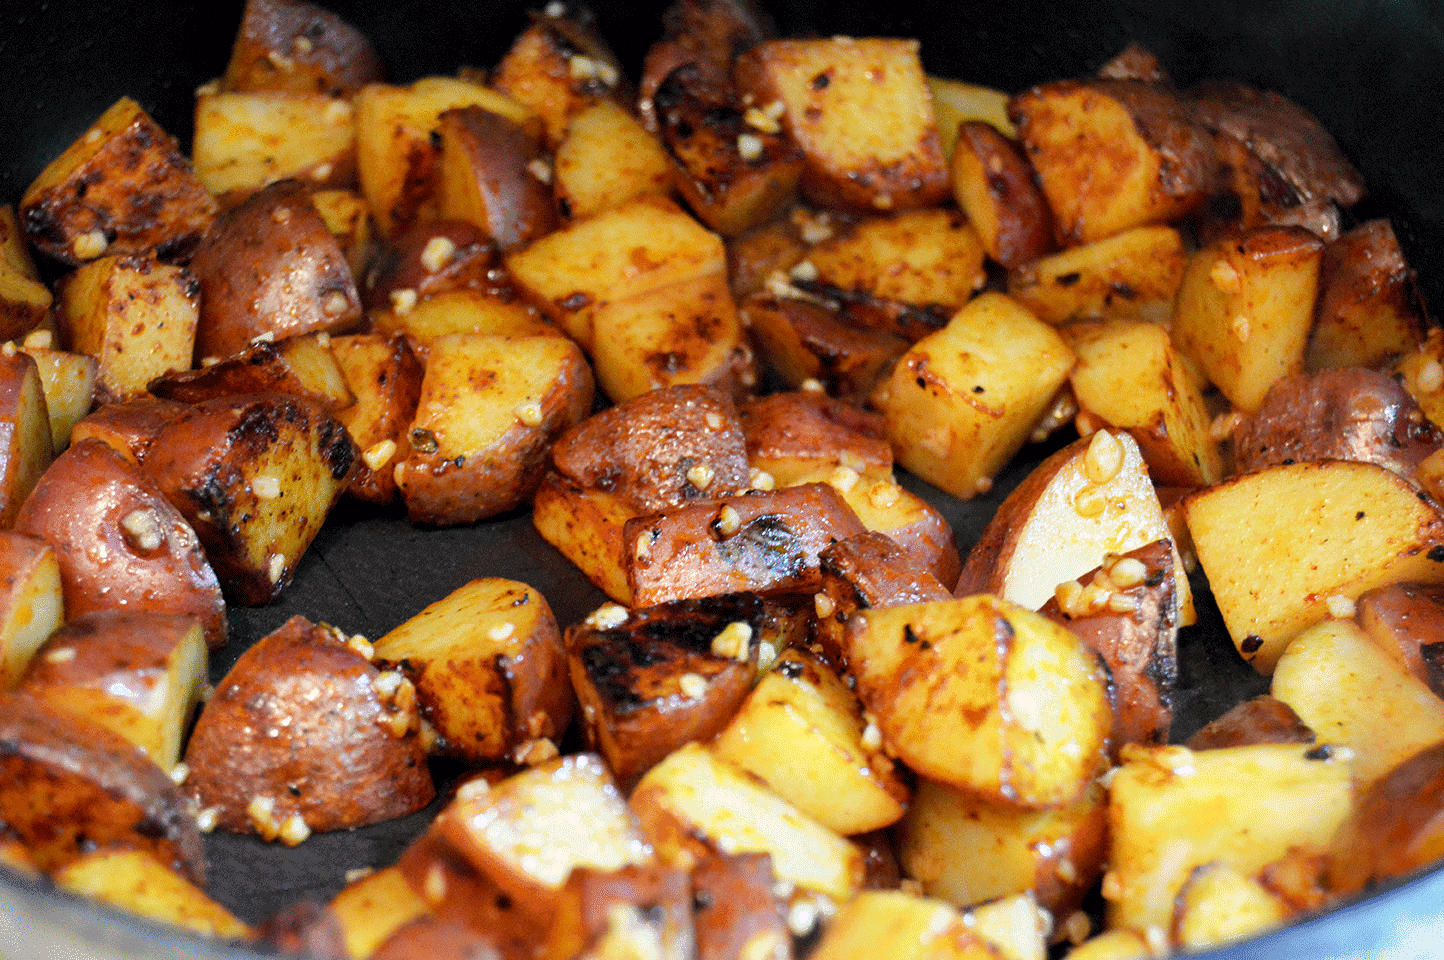 garlic and potatoes